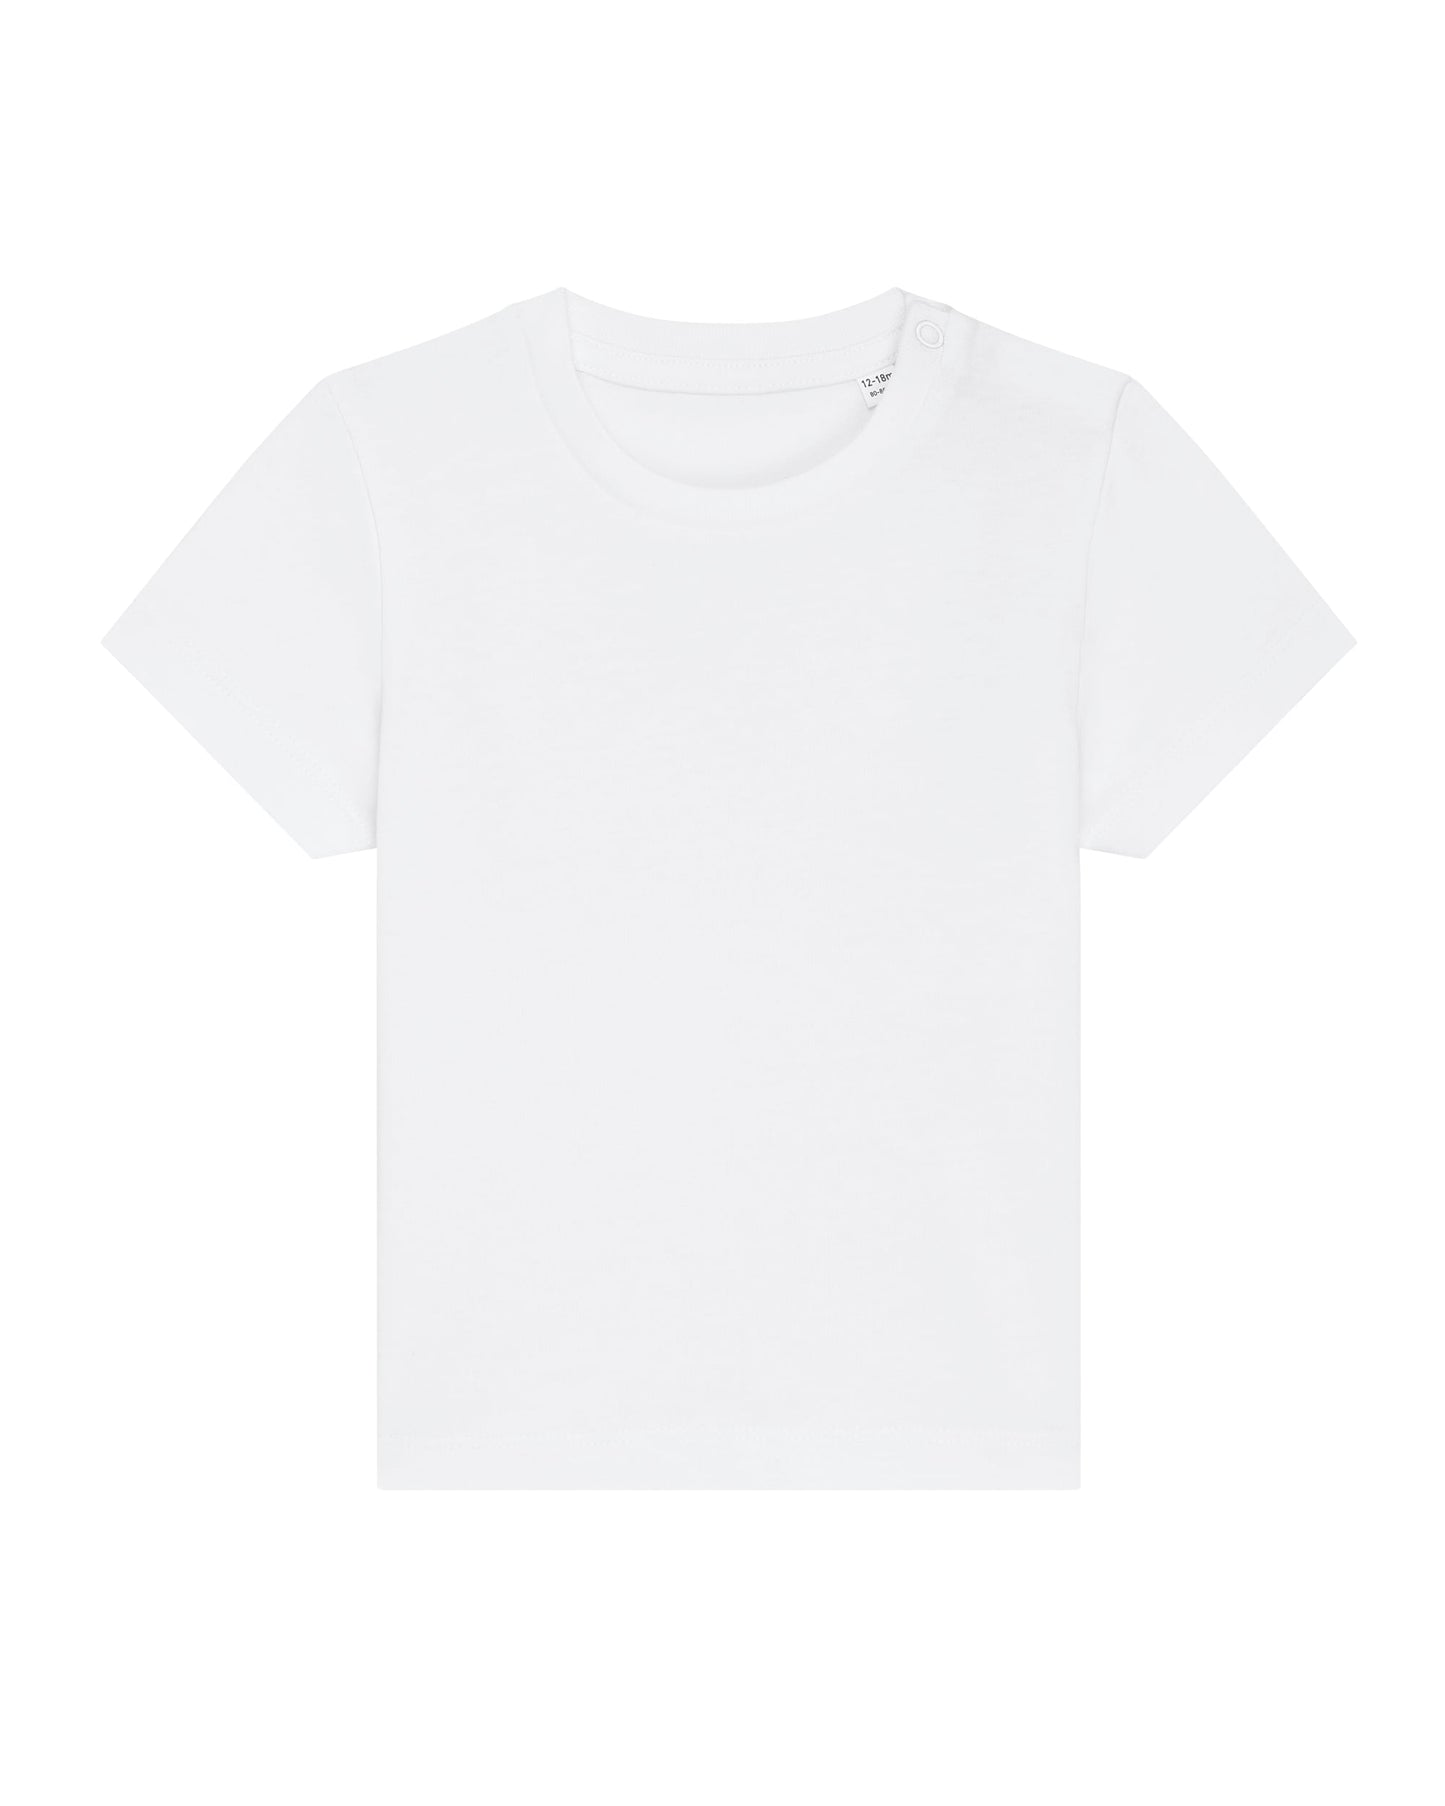 918 Camiseta Bebé 0-36 meses 155 gms 100% algodón orgánico 🌿